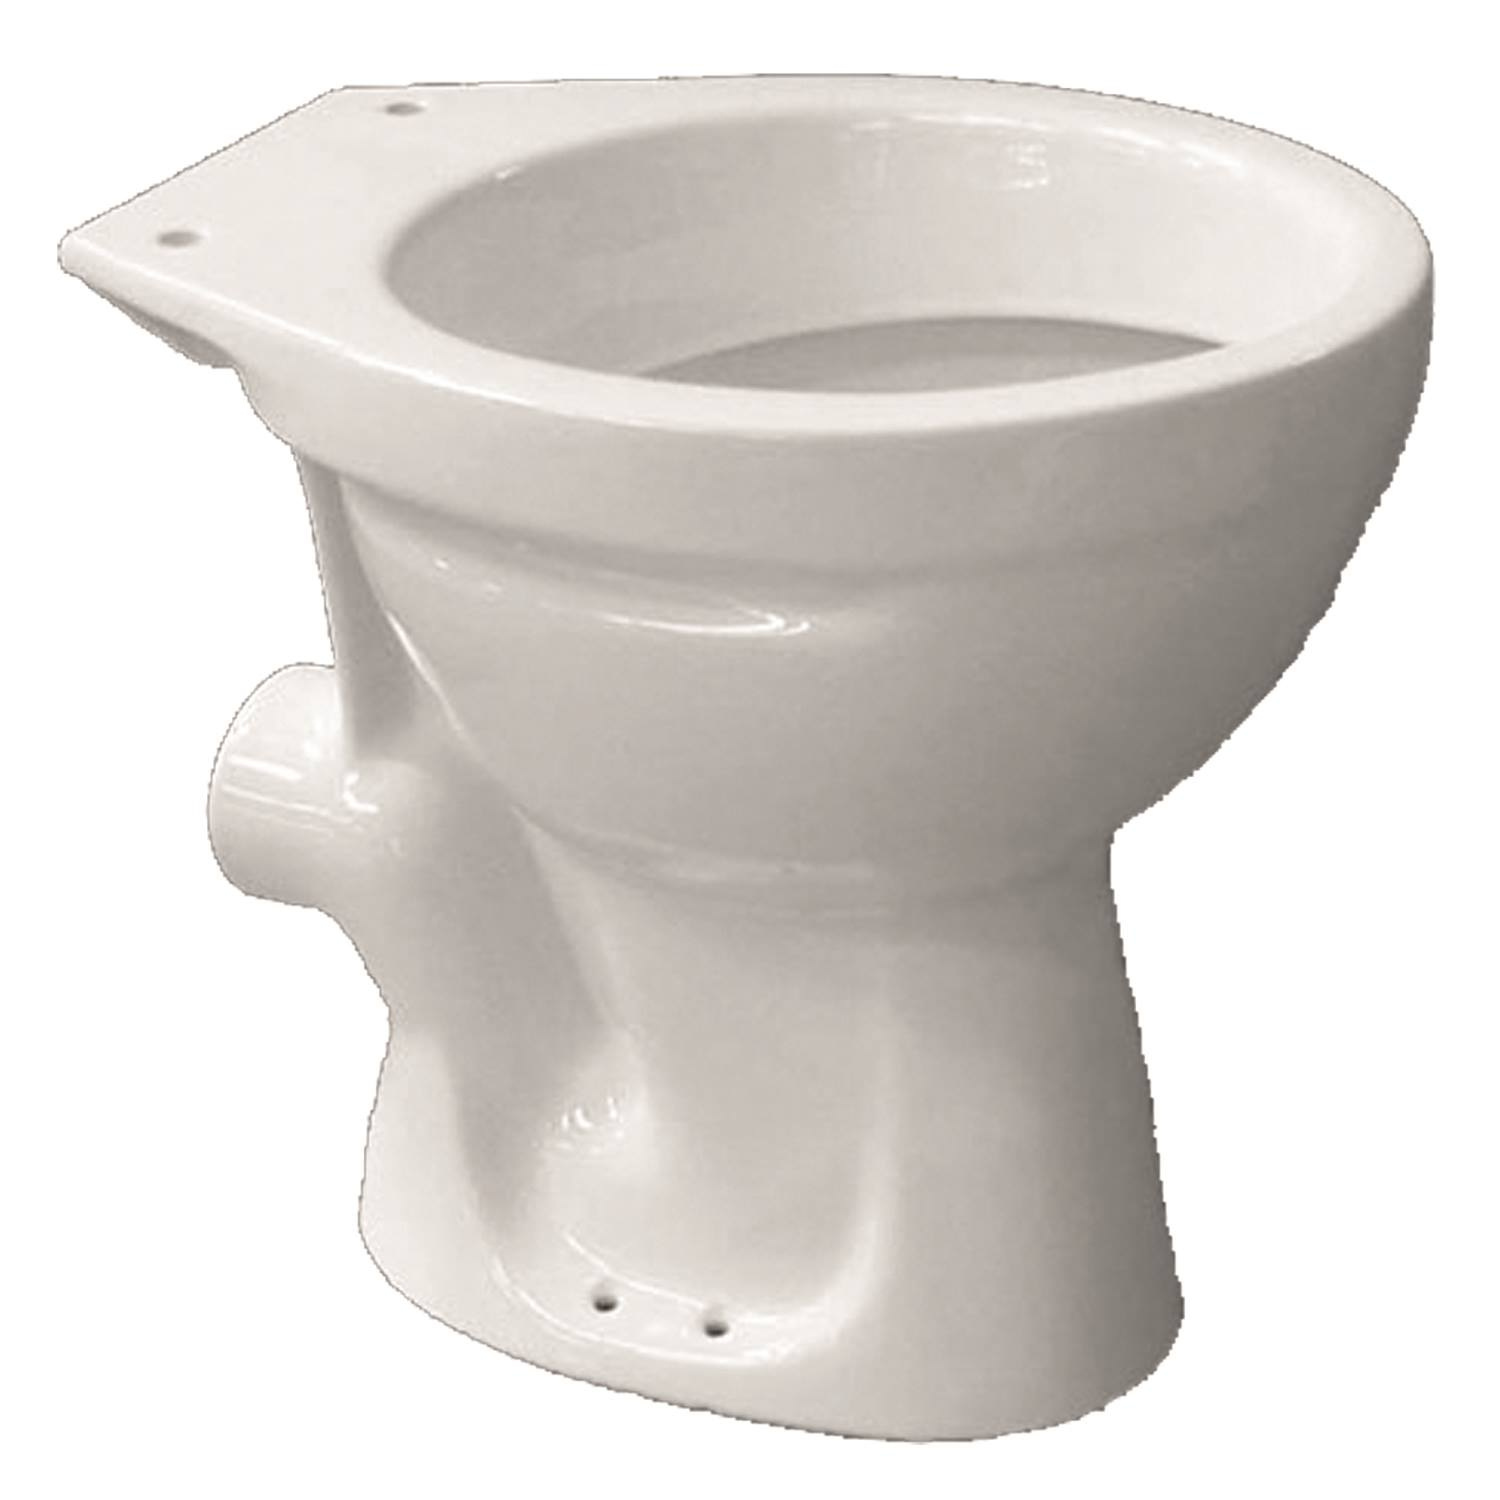 Vrijstaande Toiletpot Van Marcke ISIFIX Muuraansluiting Go by Van Marcke